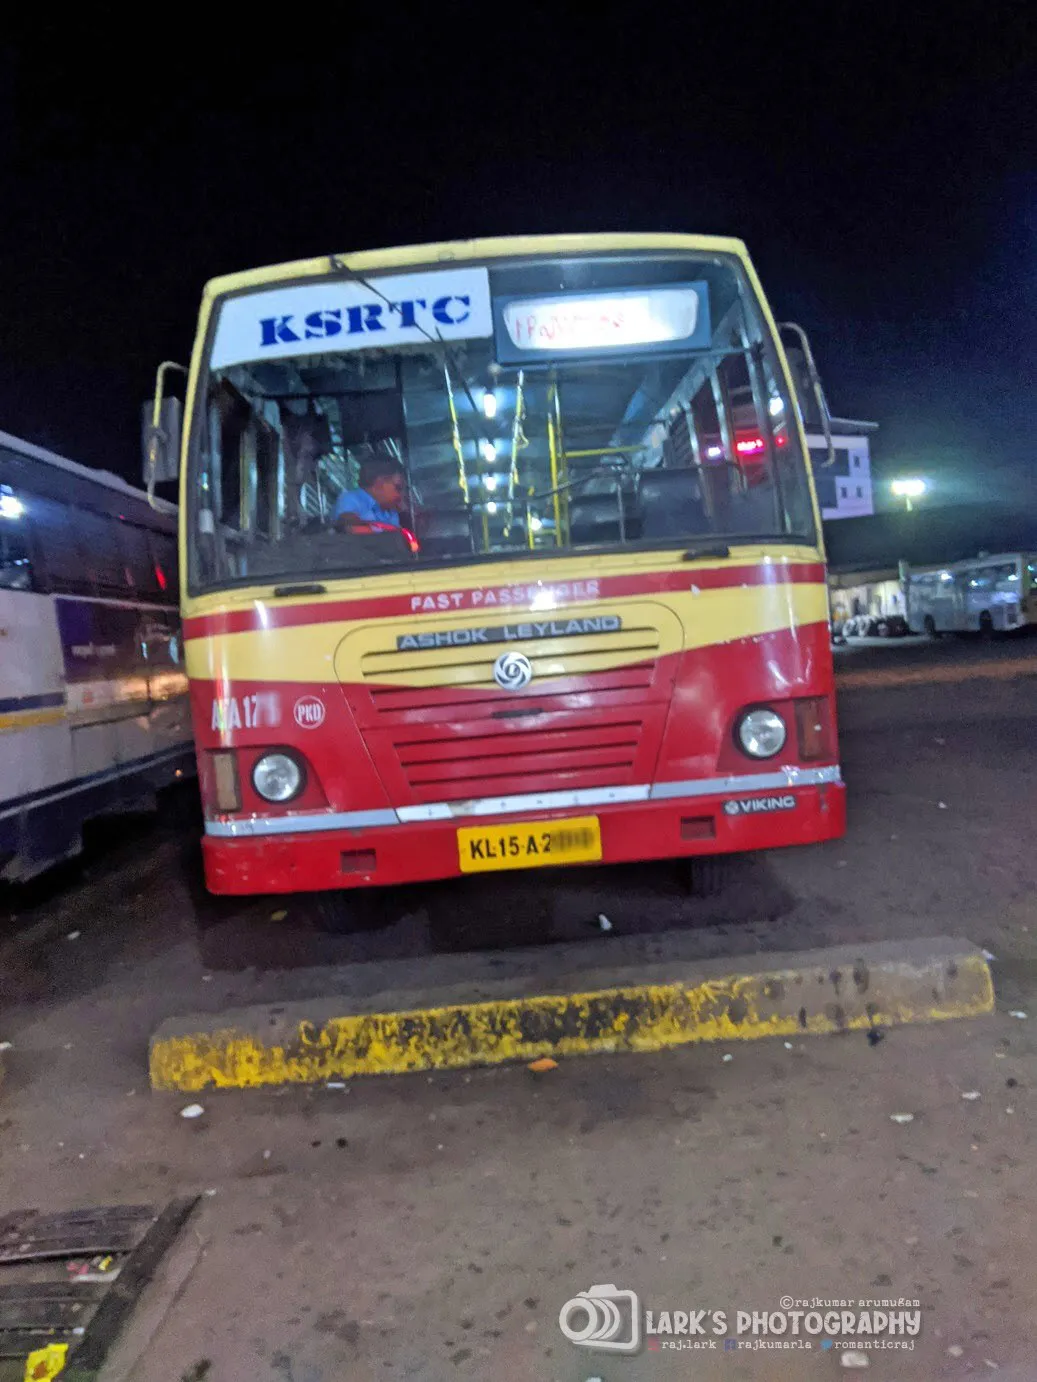 KSRTC Fast Passenger ATA 177 Ponkunnam to Kozhikode Bus Timings